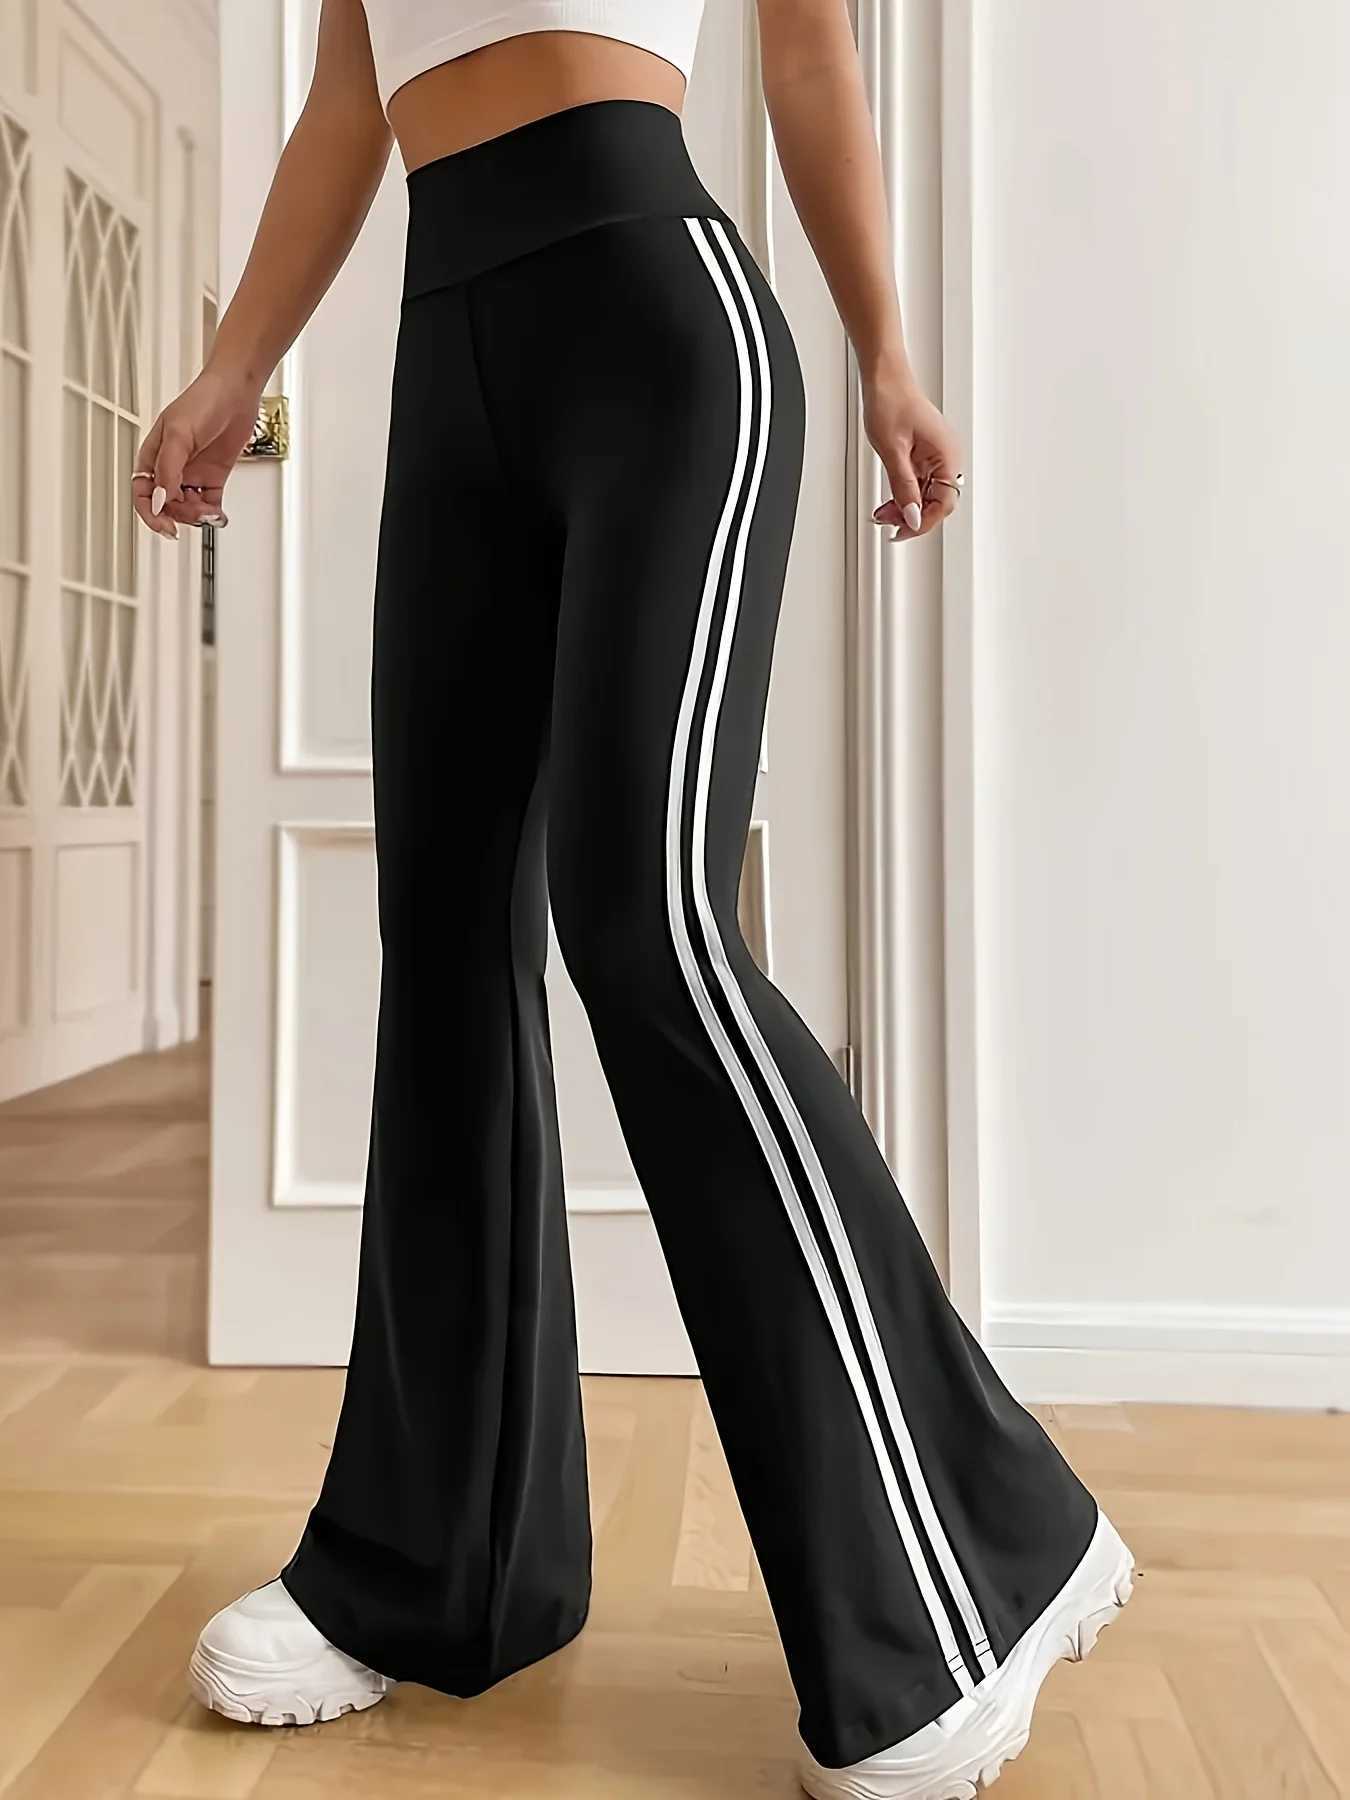 Женские брюки Capris Новая весна/лето Женщина Большая эластичная ткань британский стиль дизайн платья.